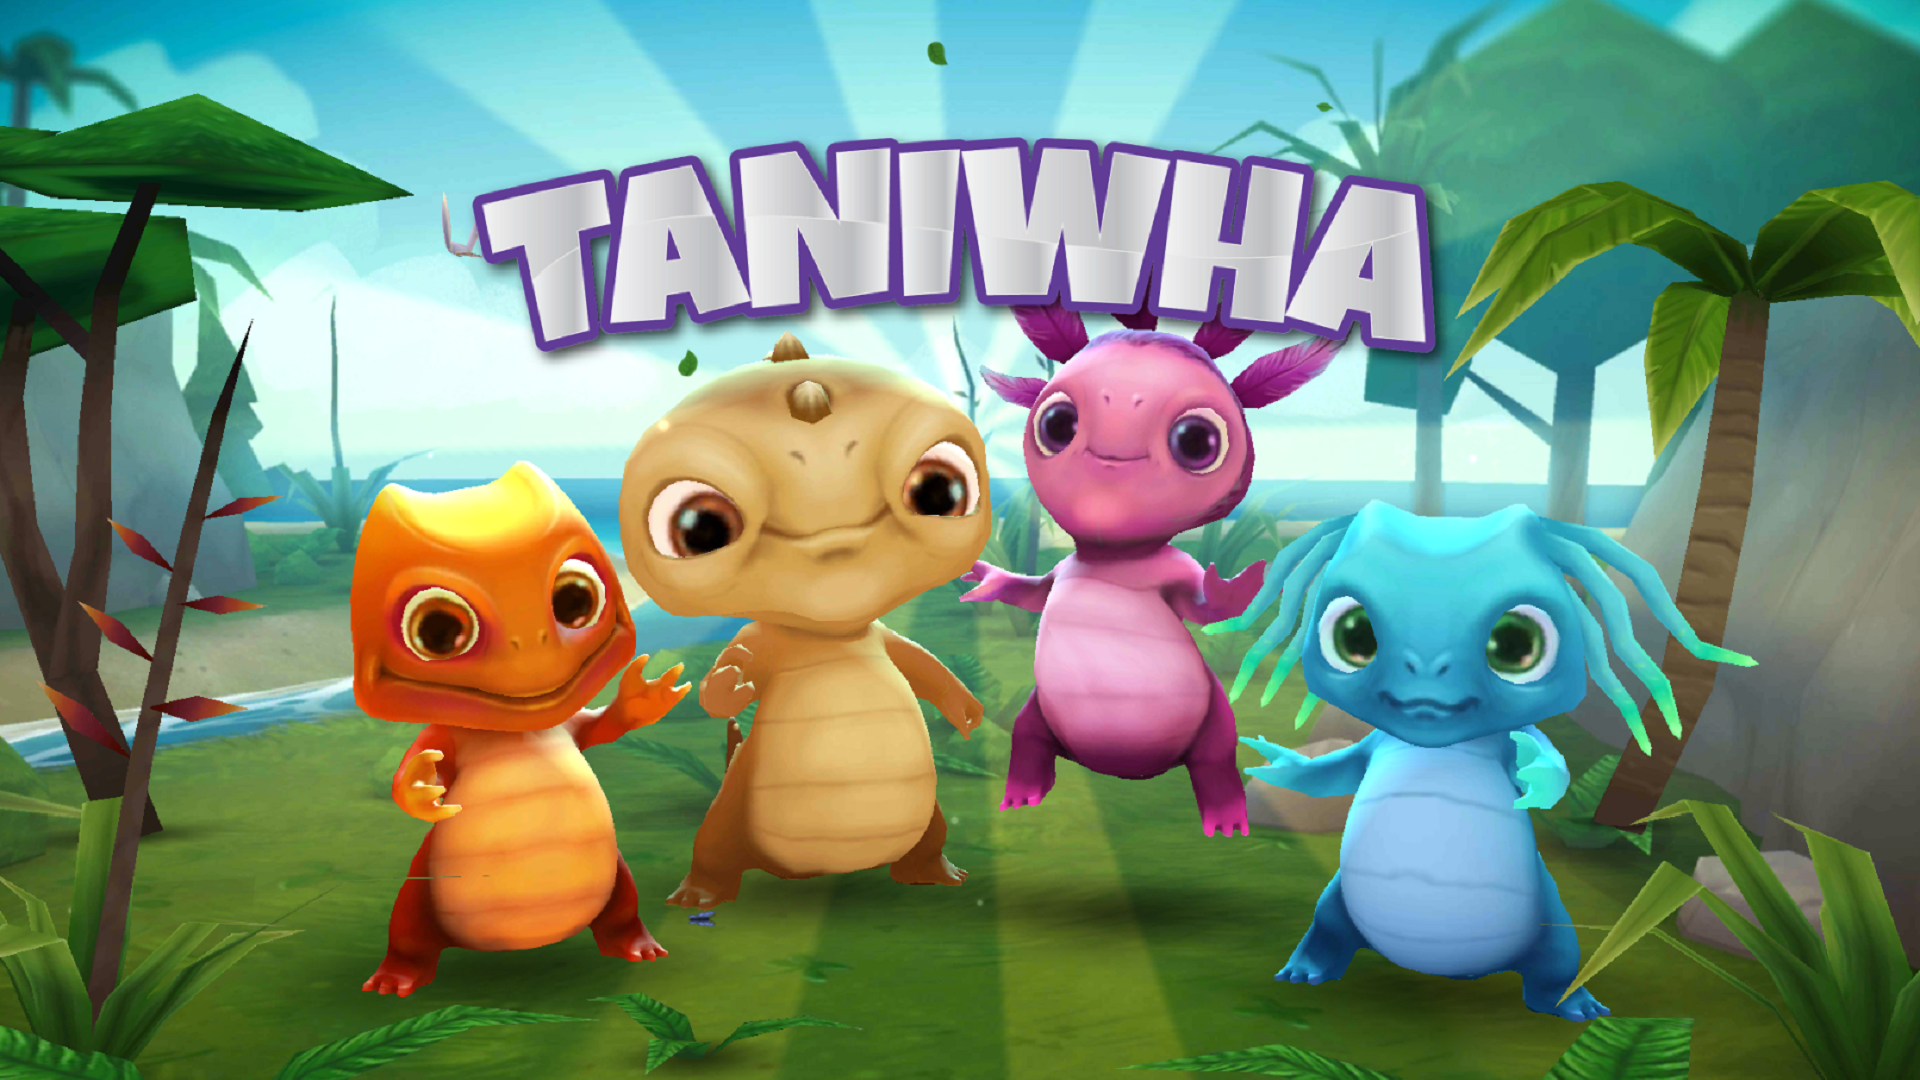 Tanwha game info.